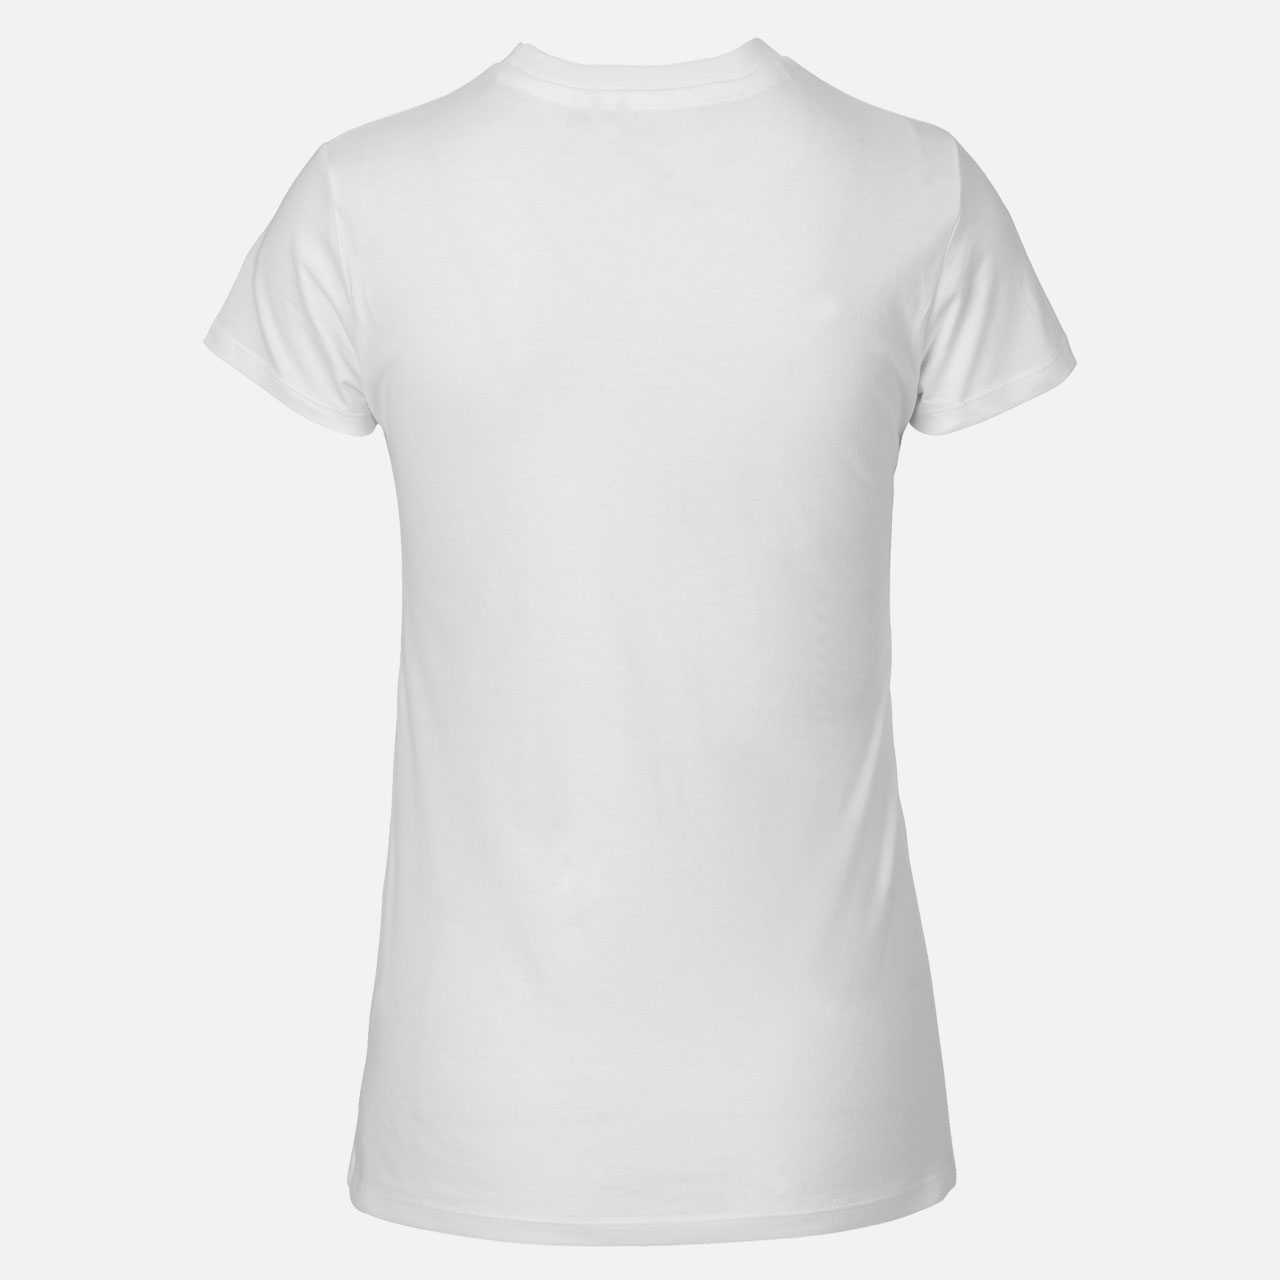 Doppelpack Neutral® Ladies Fit T-Shirt - Bio-Baumwolle Weiss Weiß 2XL